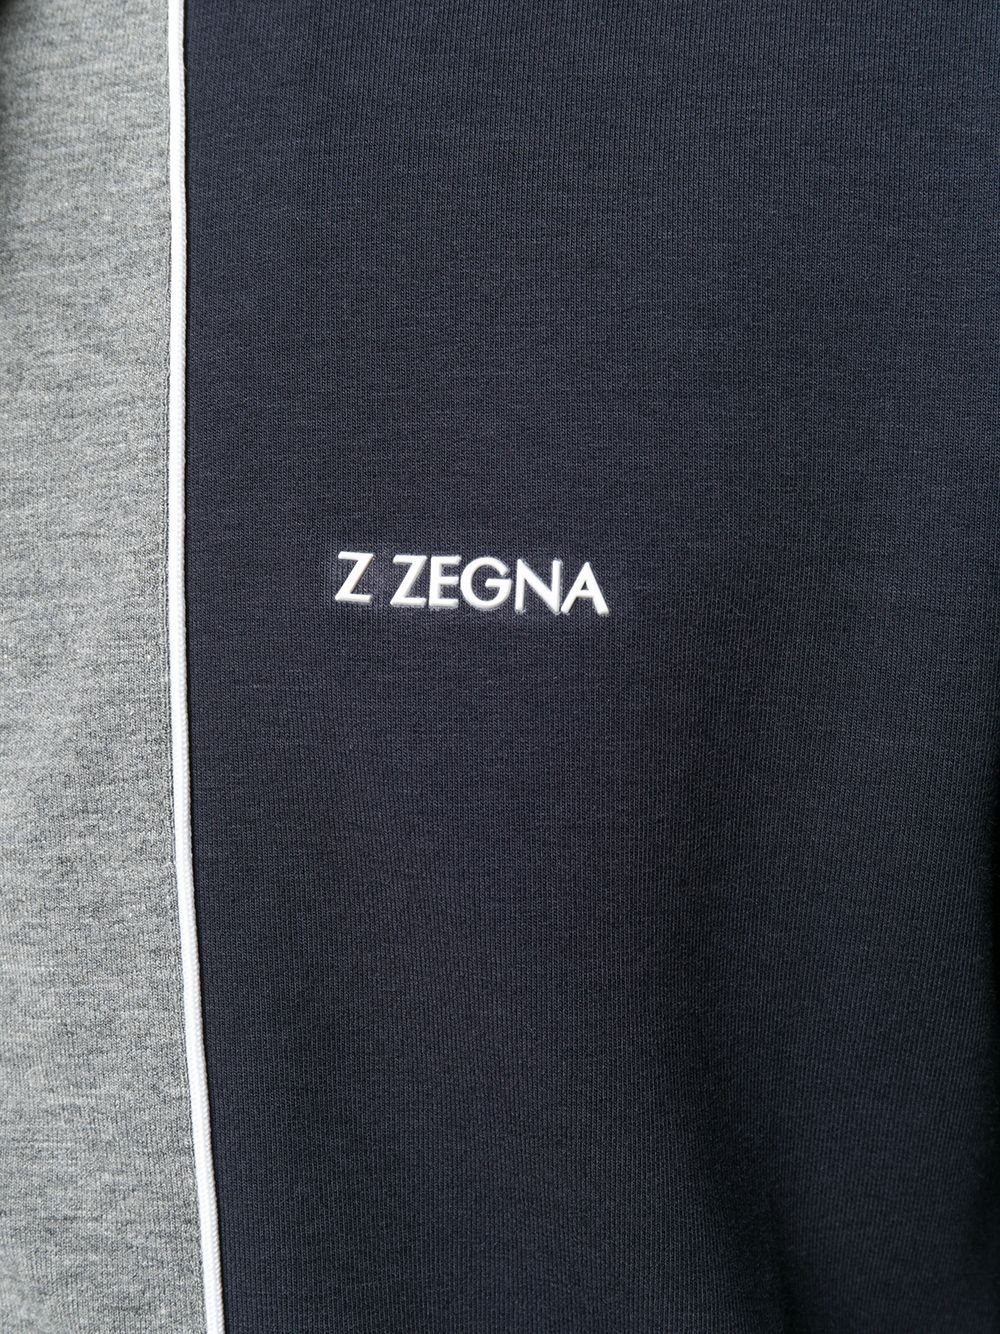 фото Z zegna спортивная куртка на молнии